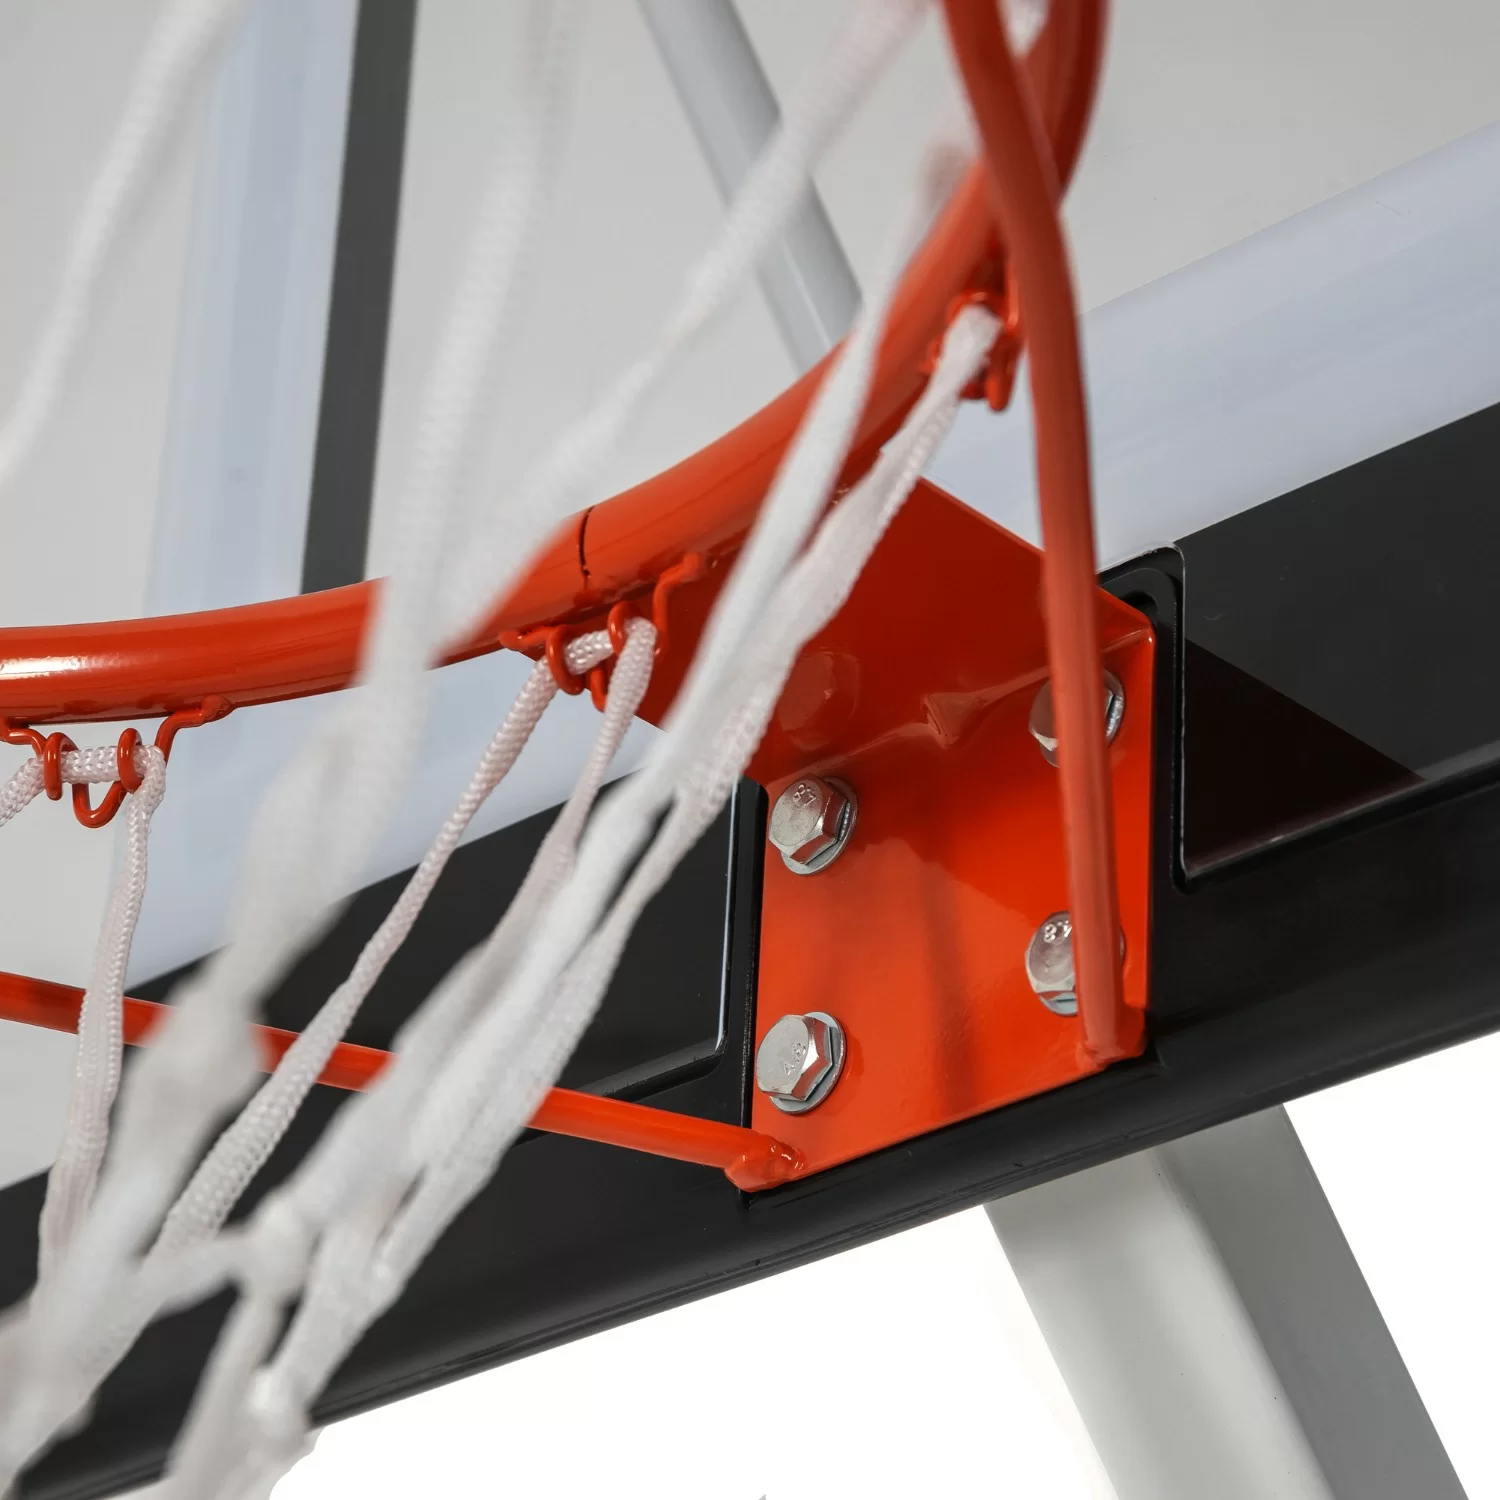 Фото Баскетбольная мобильная стойка DFC STAND44A034 со склада магазина СпортЕВ